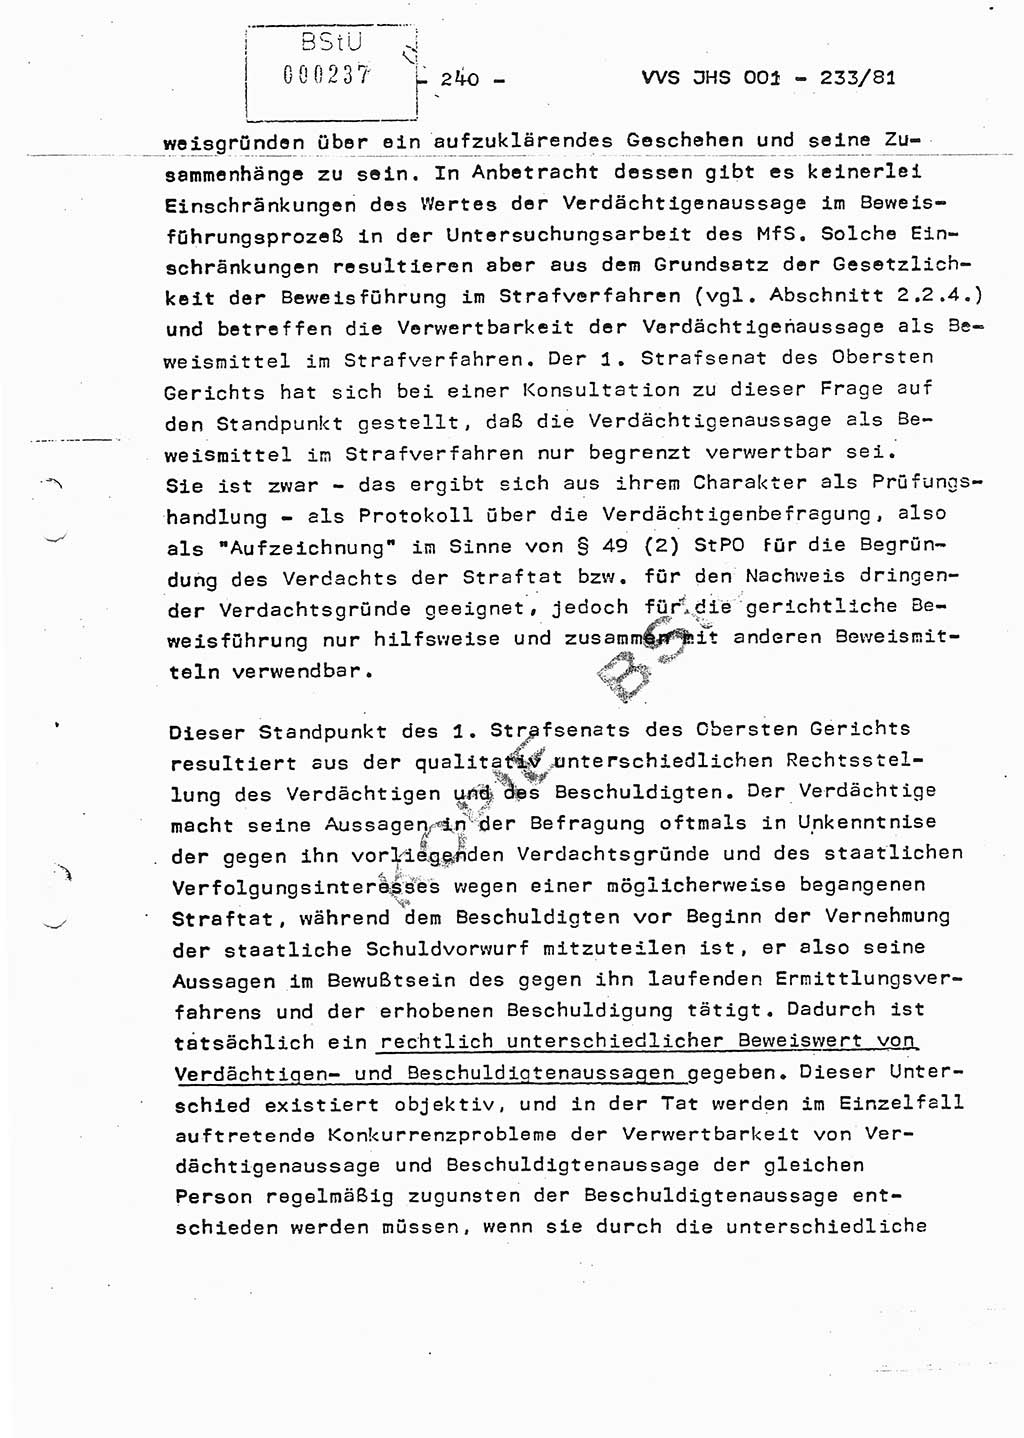 Dissertation Oberstleutnant Horst Zank (JHS), Oberstleutnant Dr. Karl-Heinz Knoblauch (JHS), Oberstleutnant Gustav-Adolf Kowalewski (HA Ⅸ), Oberstleutnant Wolfgang Plötner (HA Ⅸ), Ministerium für Staatssicherheit (MfS) [Deutsche Demokratische Republik (DDR)], Juristische Hochschule (JHS), Vertrauliche Verschlußsache (VVS) o001-233/81, Potsdam 1981, Blatt 240 (Diss. MfS DDR JHS VVS o001-233/81 1981, Bl. 240)